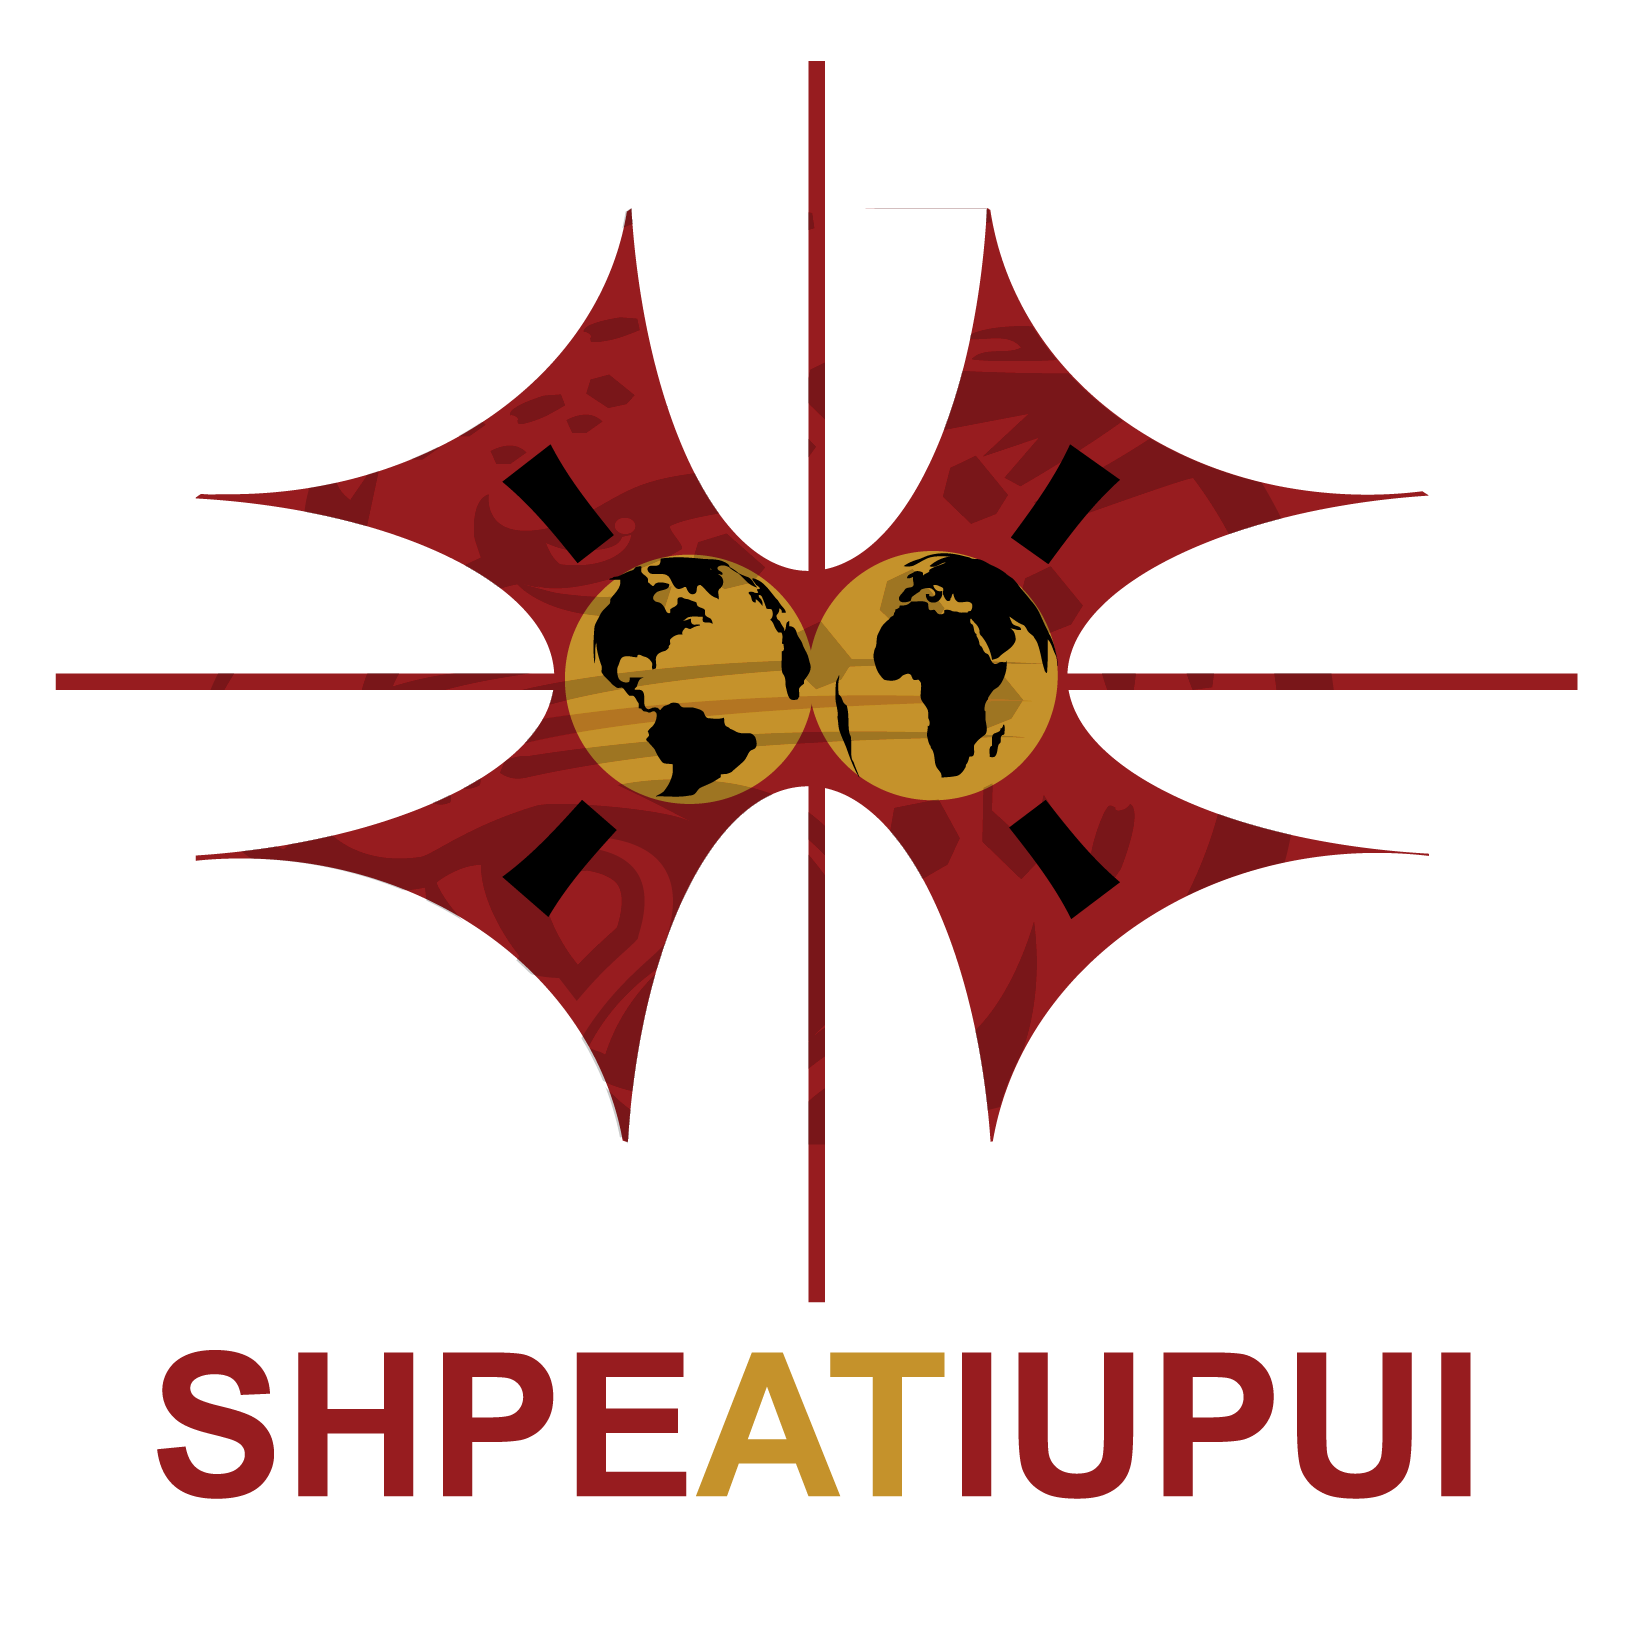 SHPE at IUPUI